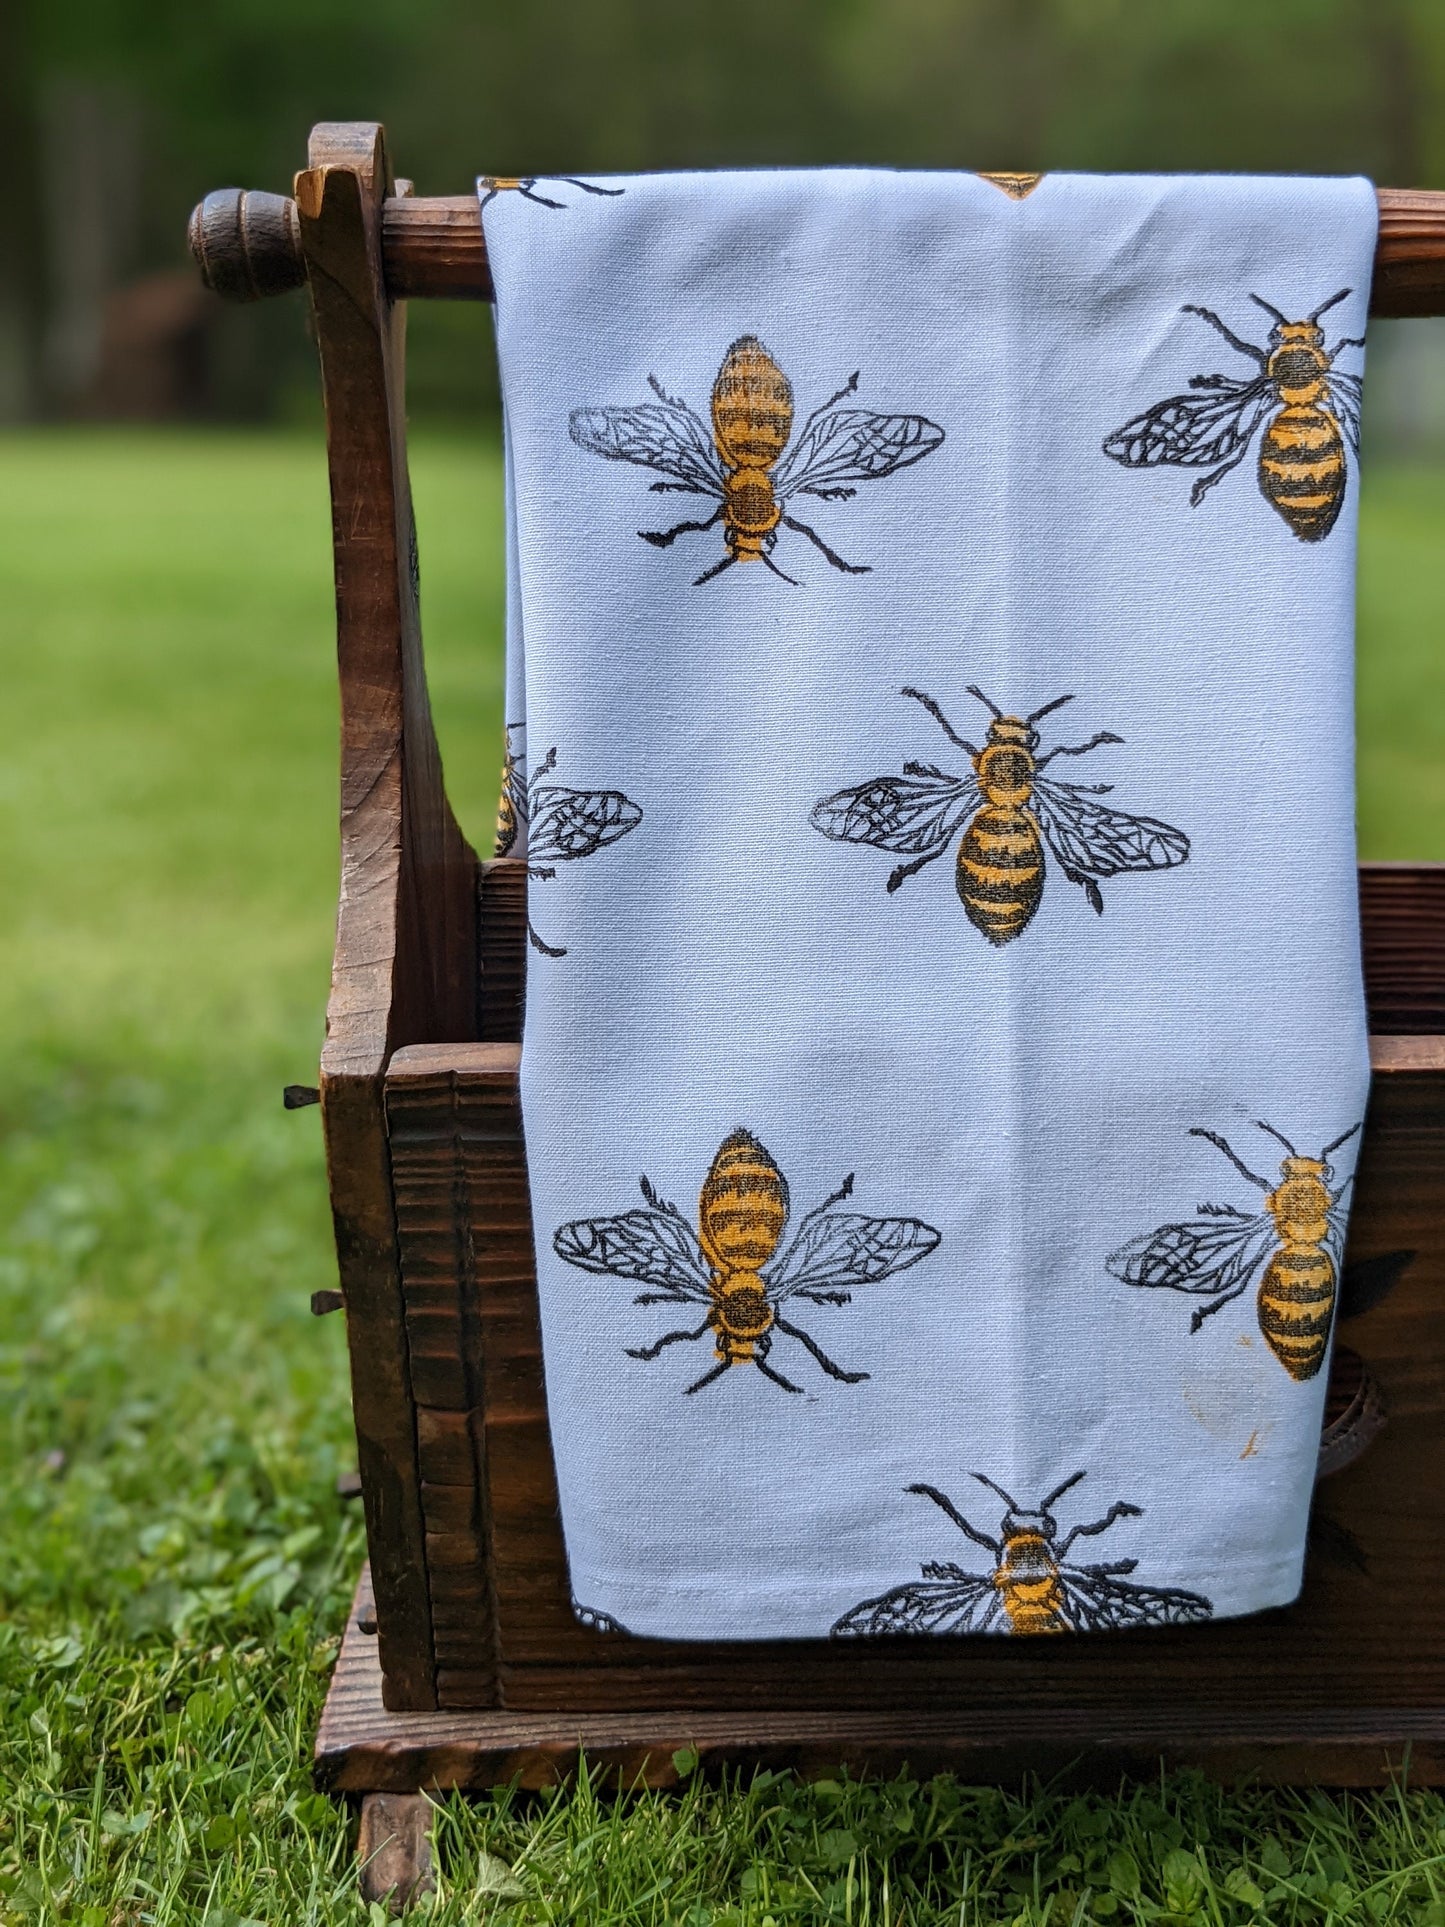 Bee Block-Printed Kitchen Towel